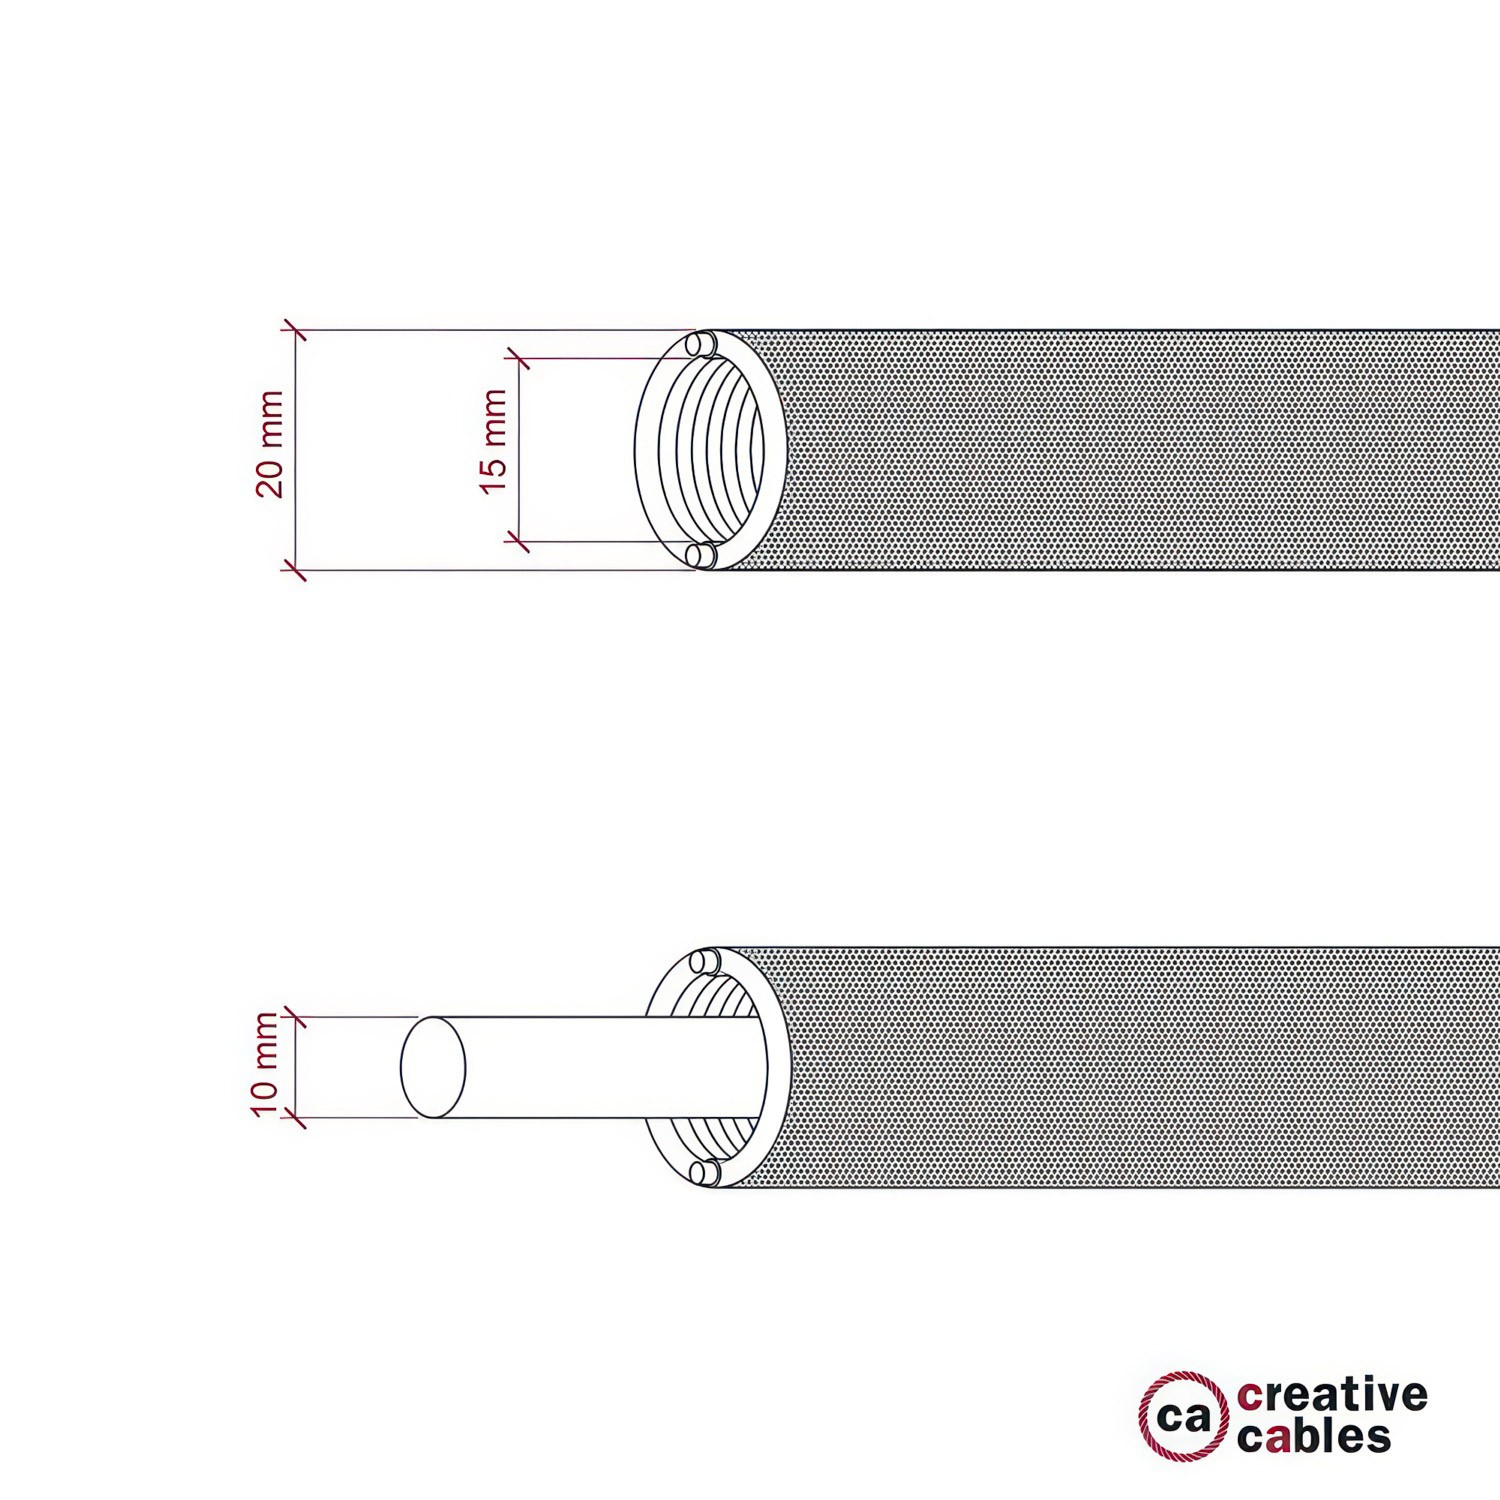 Tubo flexible Creative-Tube, revestido de tejido en Rayon Cipria RM27, diámetro 20 mm